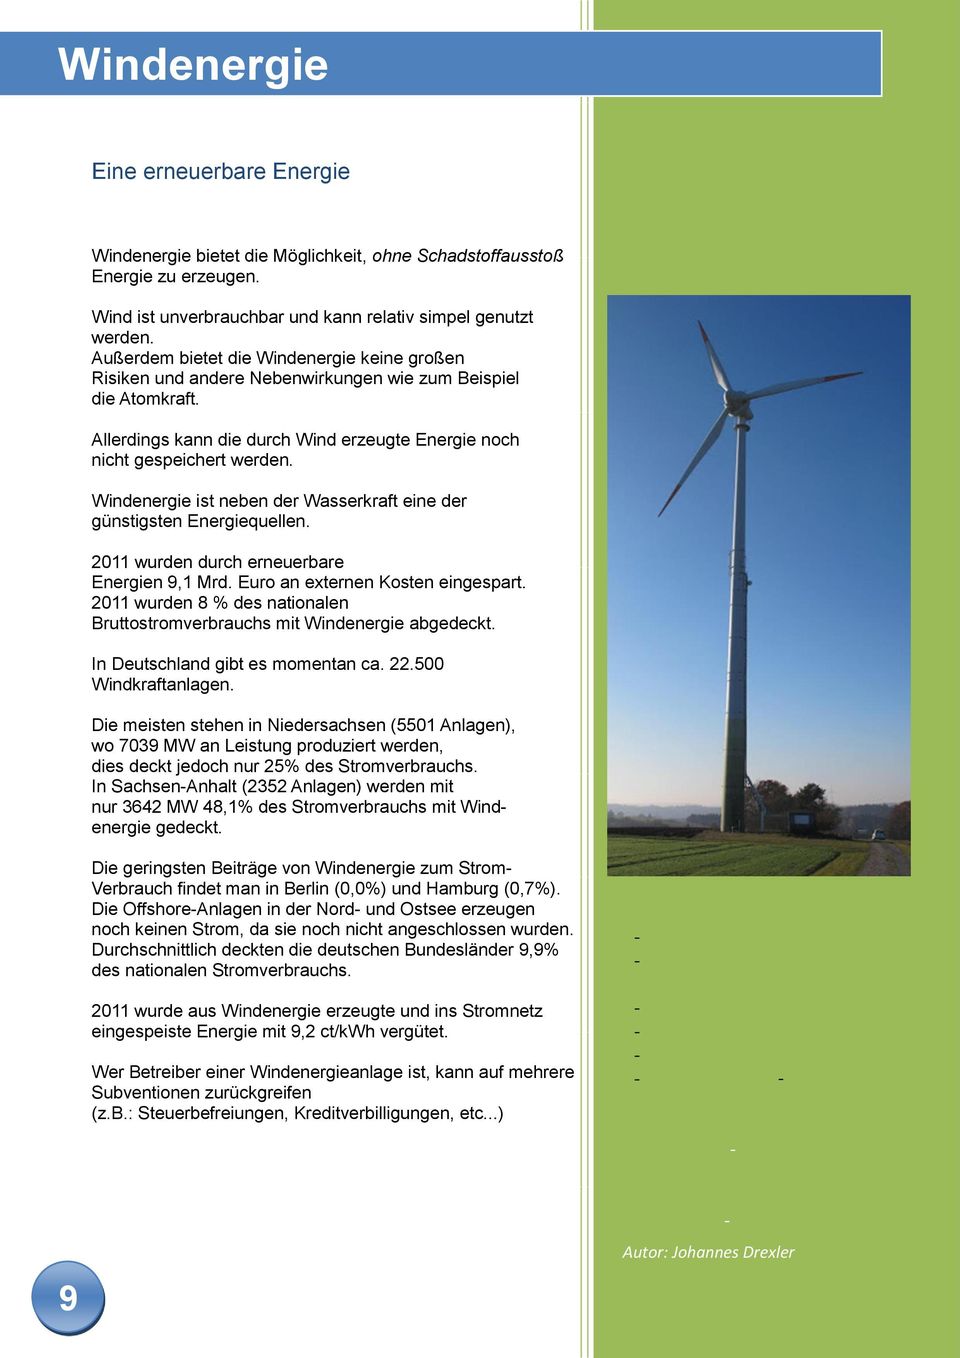 Windenergie ist neben der Wasserkraft eine der günstigsten Energiequellen. 2011 wurden durch erneuerbare Energien 9,1 Mrd. Euro an externen Kosten eingespart.